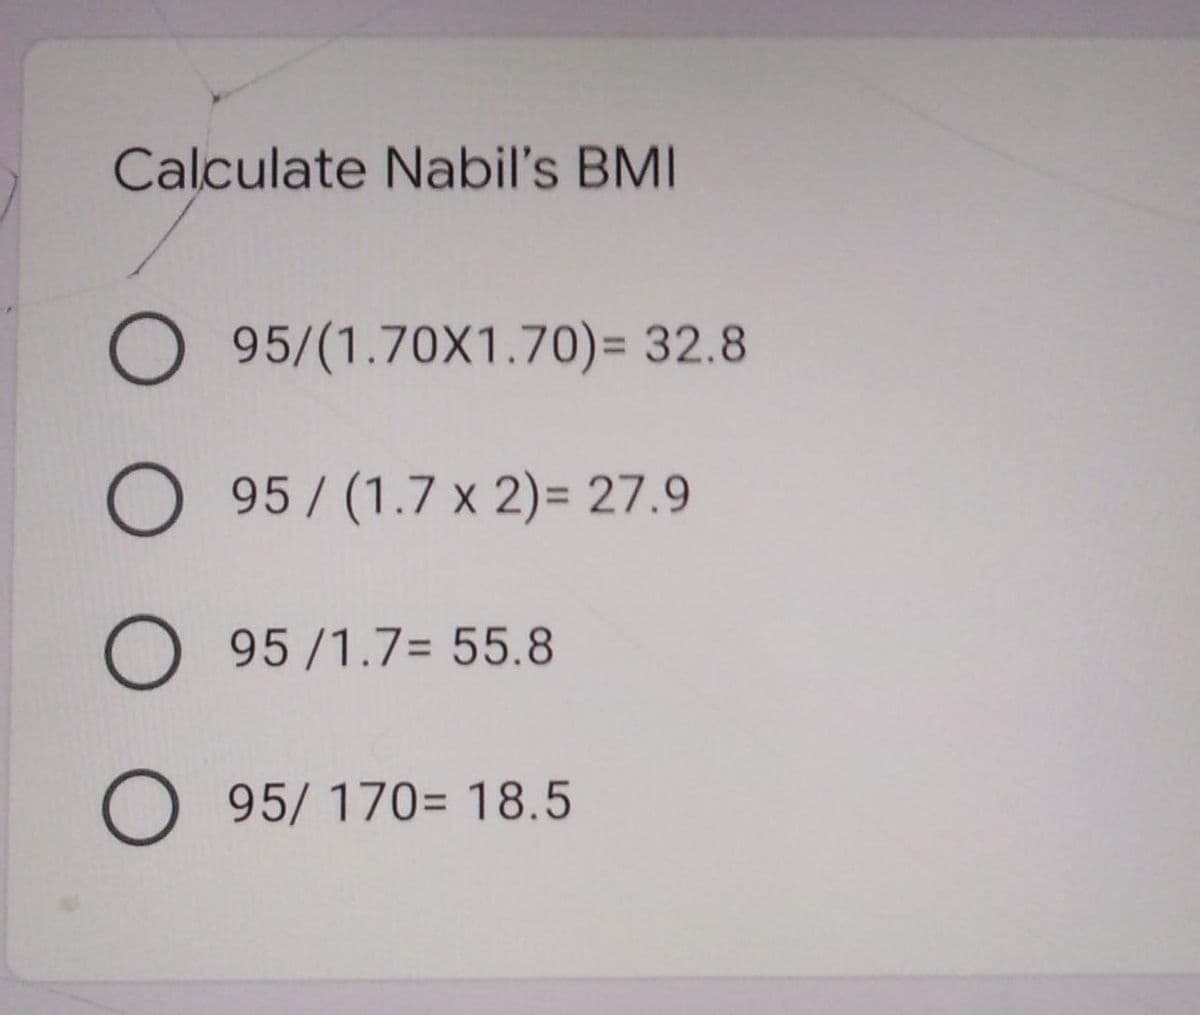 Calculate Nabil's BMI
O 95/(1.70X1.70)= 32.8
O 95/(1.7 x 2)= 27.9
O 95/1.7= 55.8
O 95/ 170= 18.5
